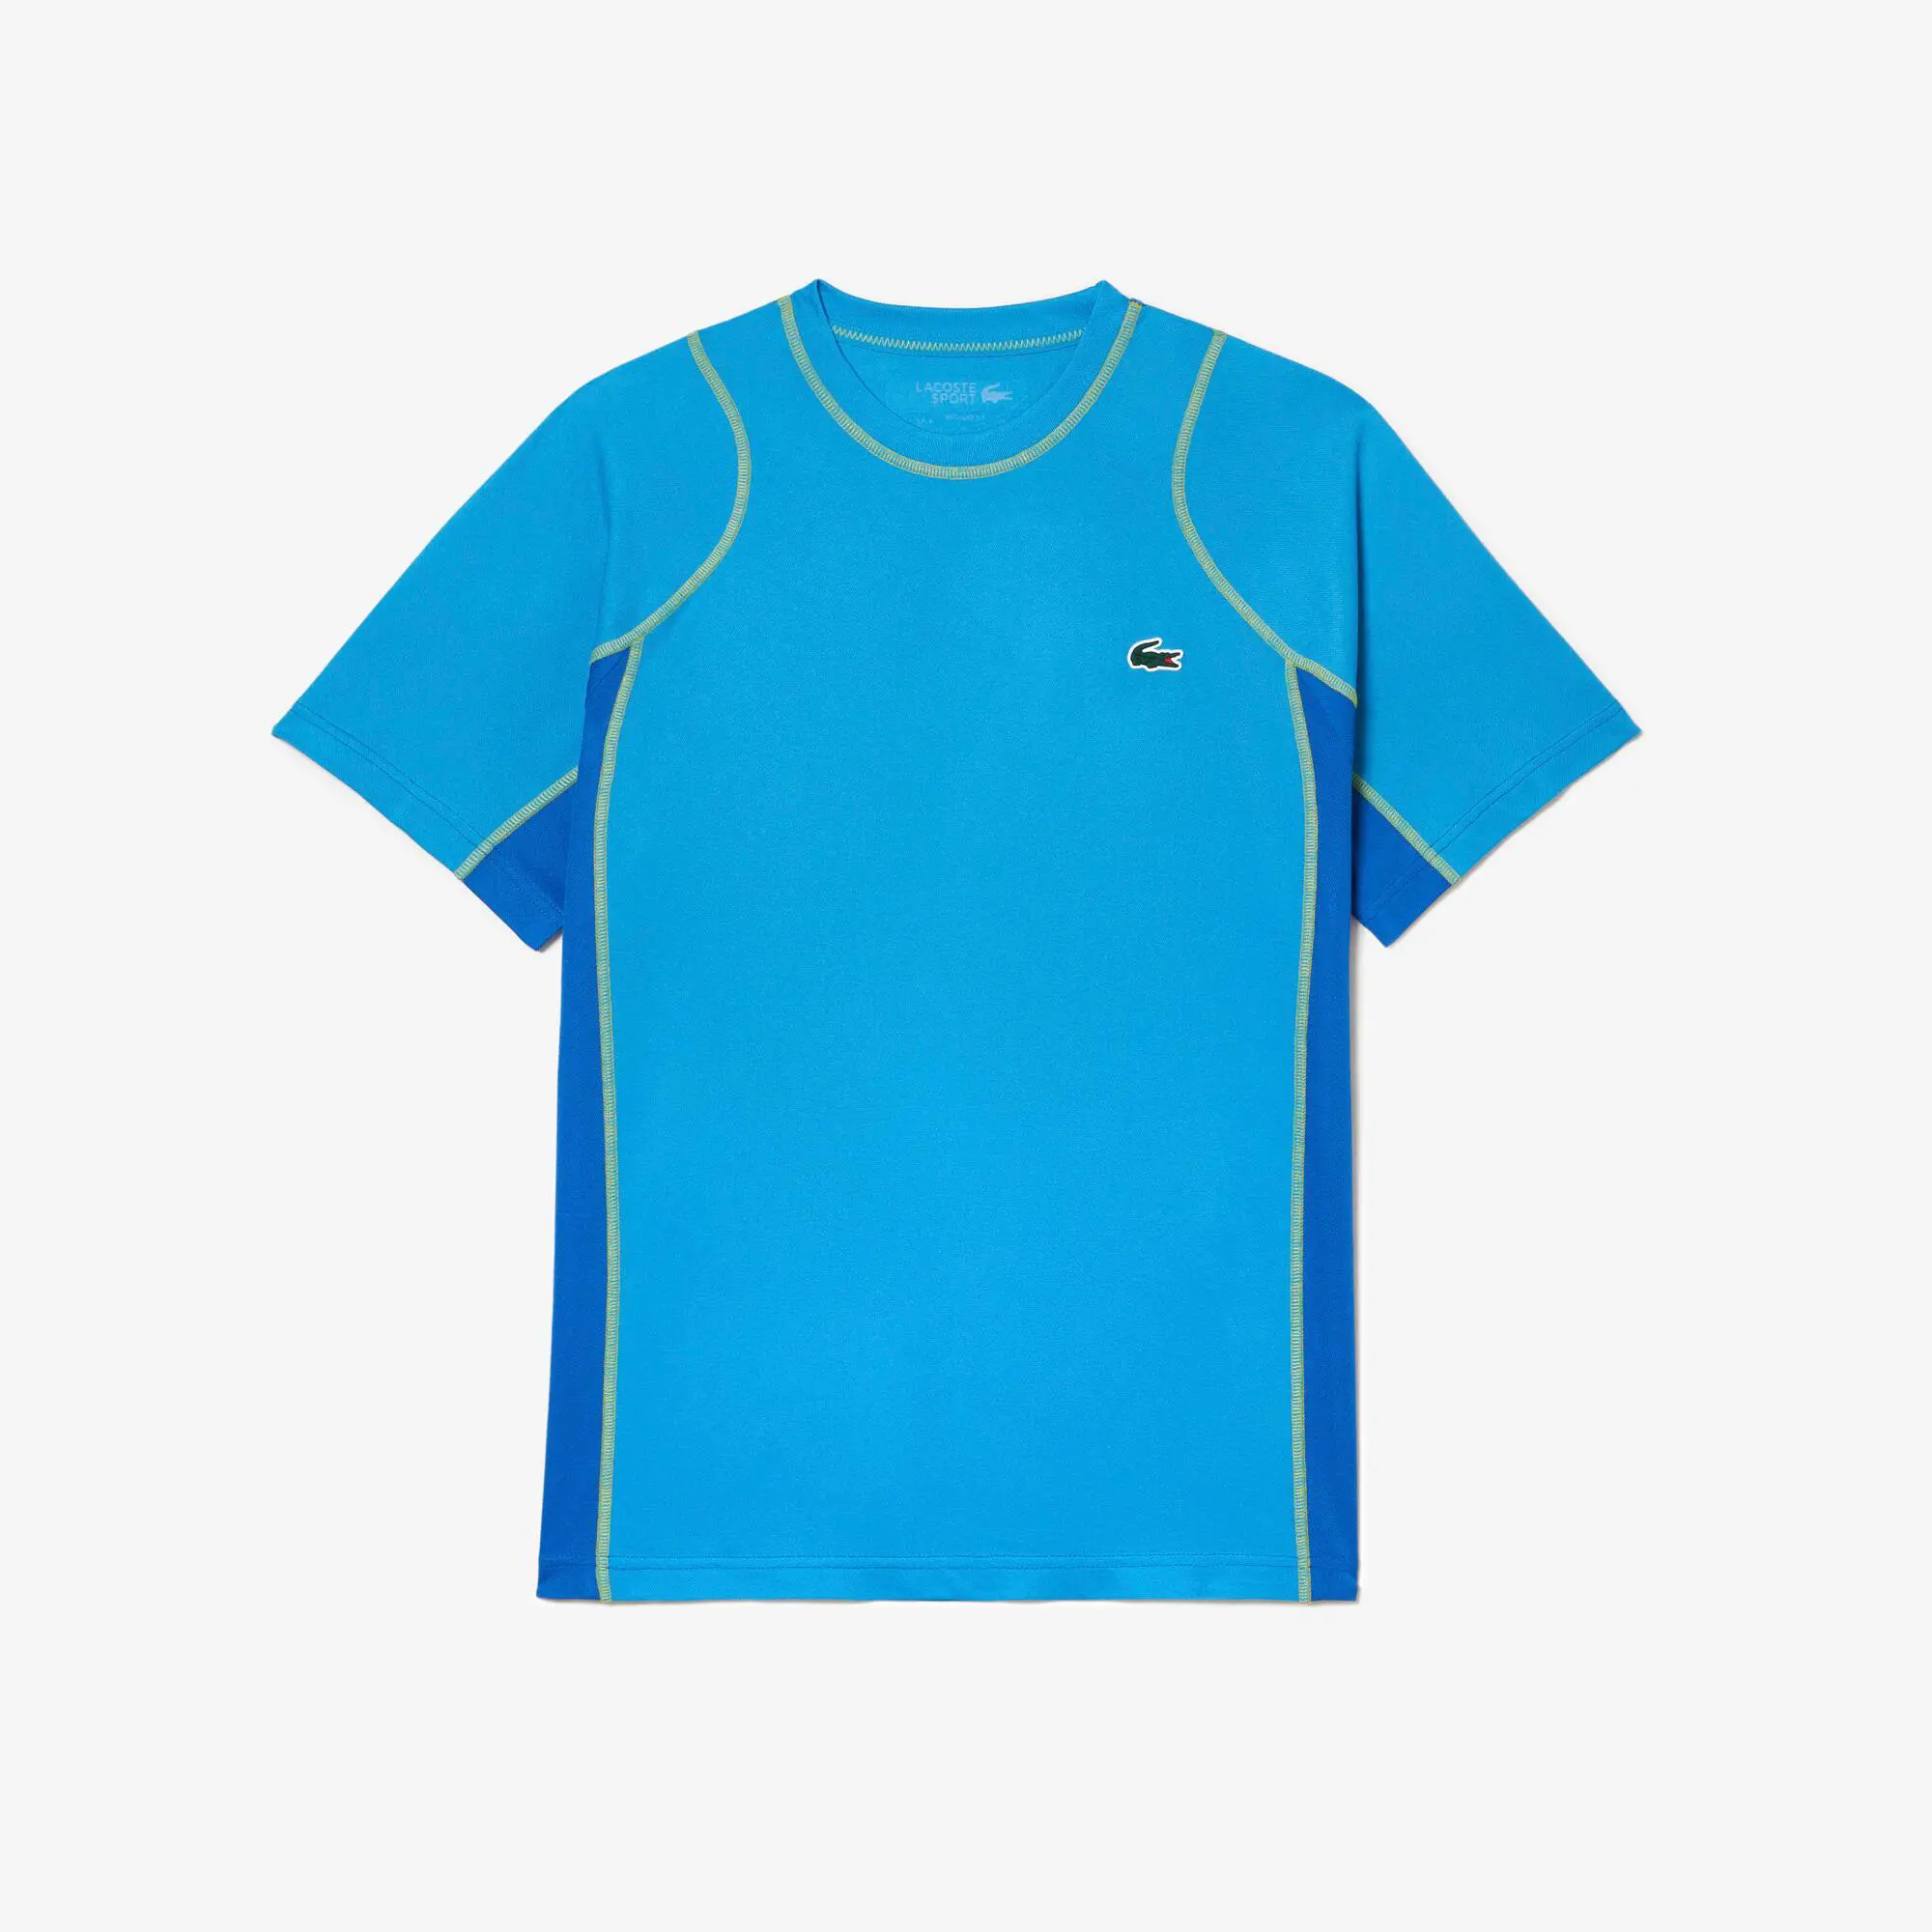 Lacoste T-shirt homme Lacoste Tennis en piqué indémaillable. 2